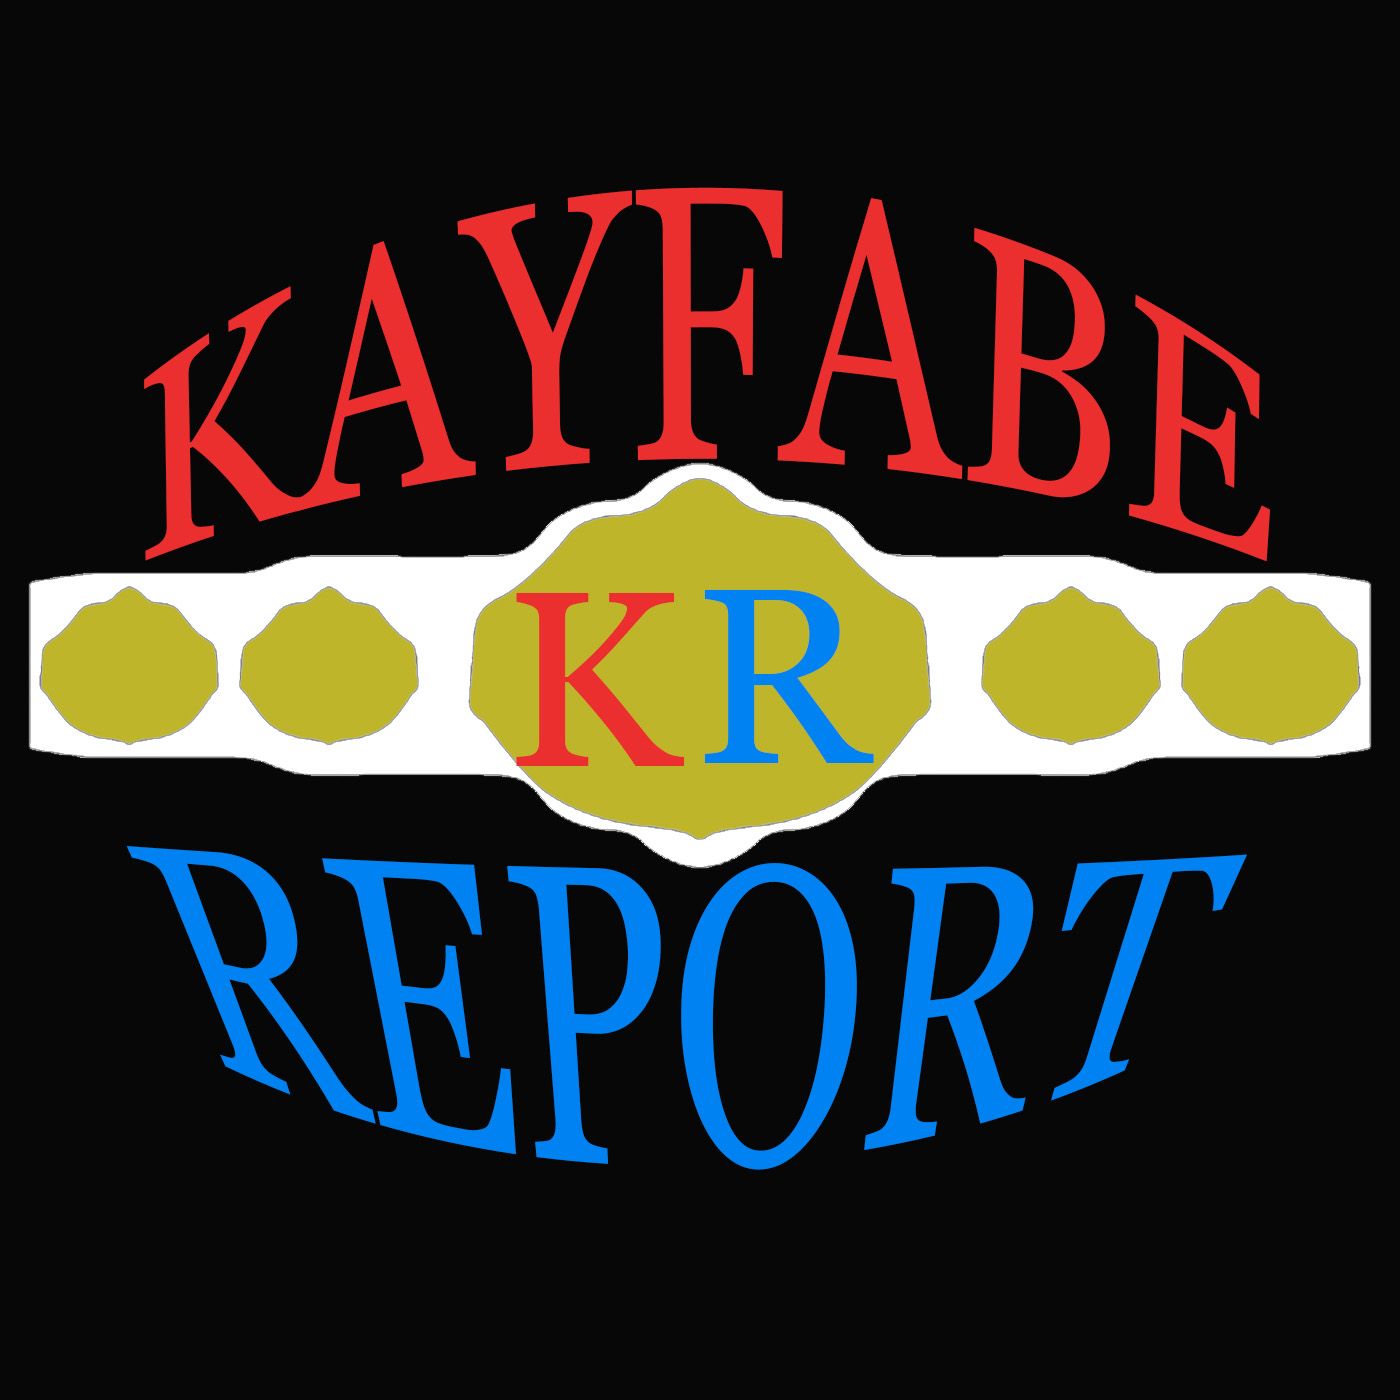 kayfabe report#42 hey hey ho ho I hope they break up